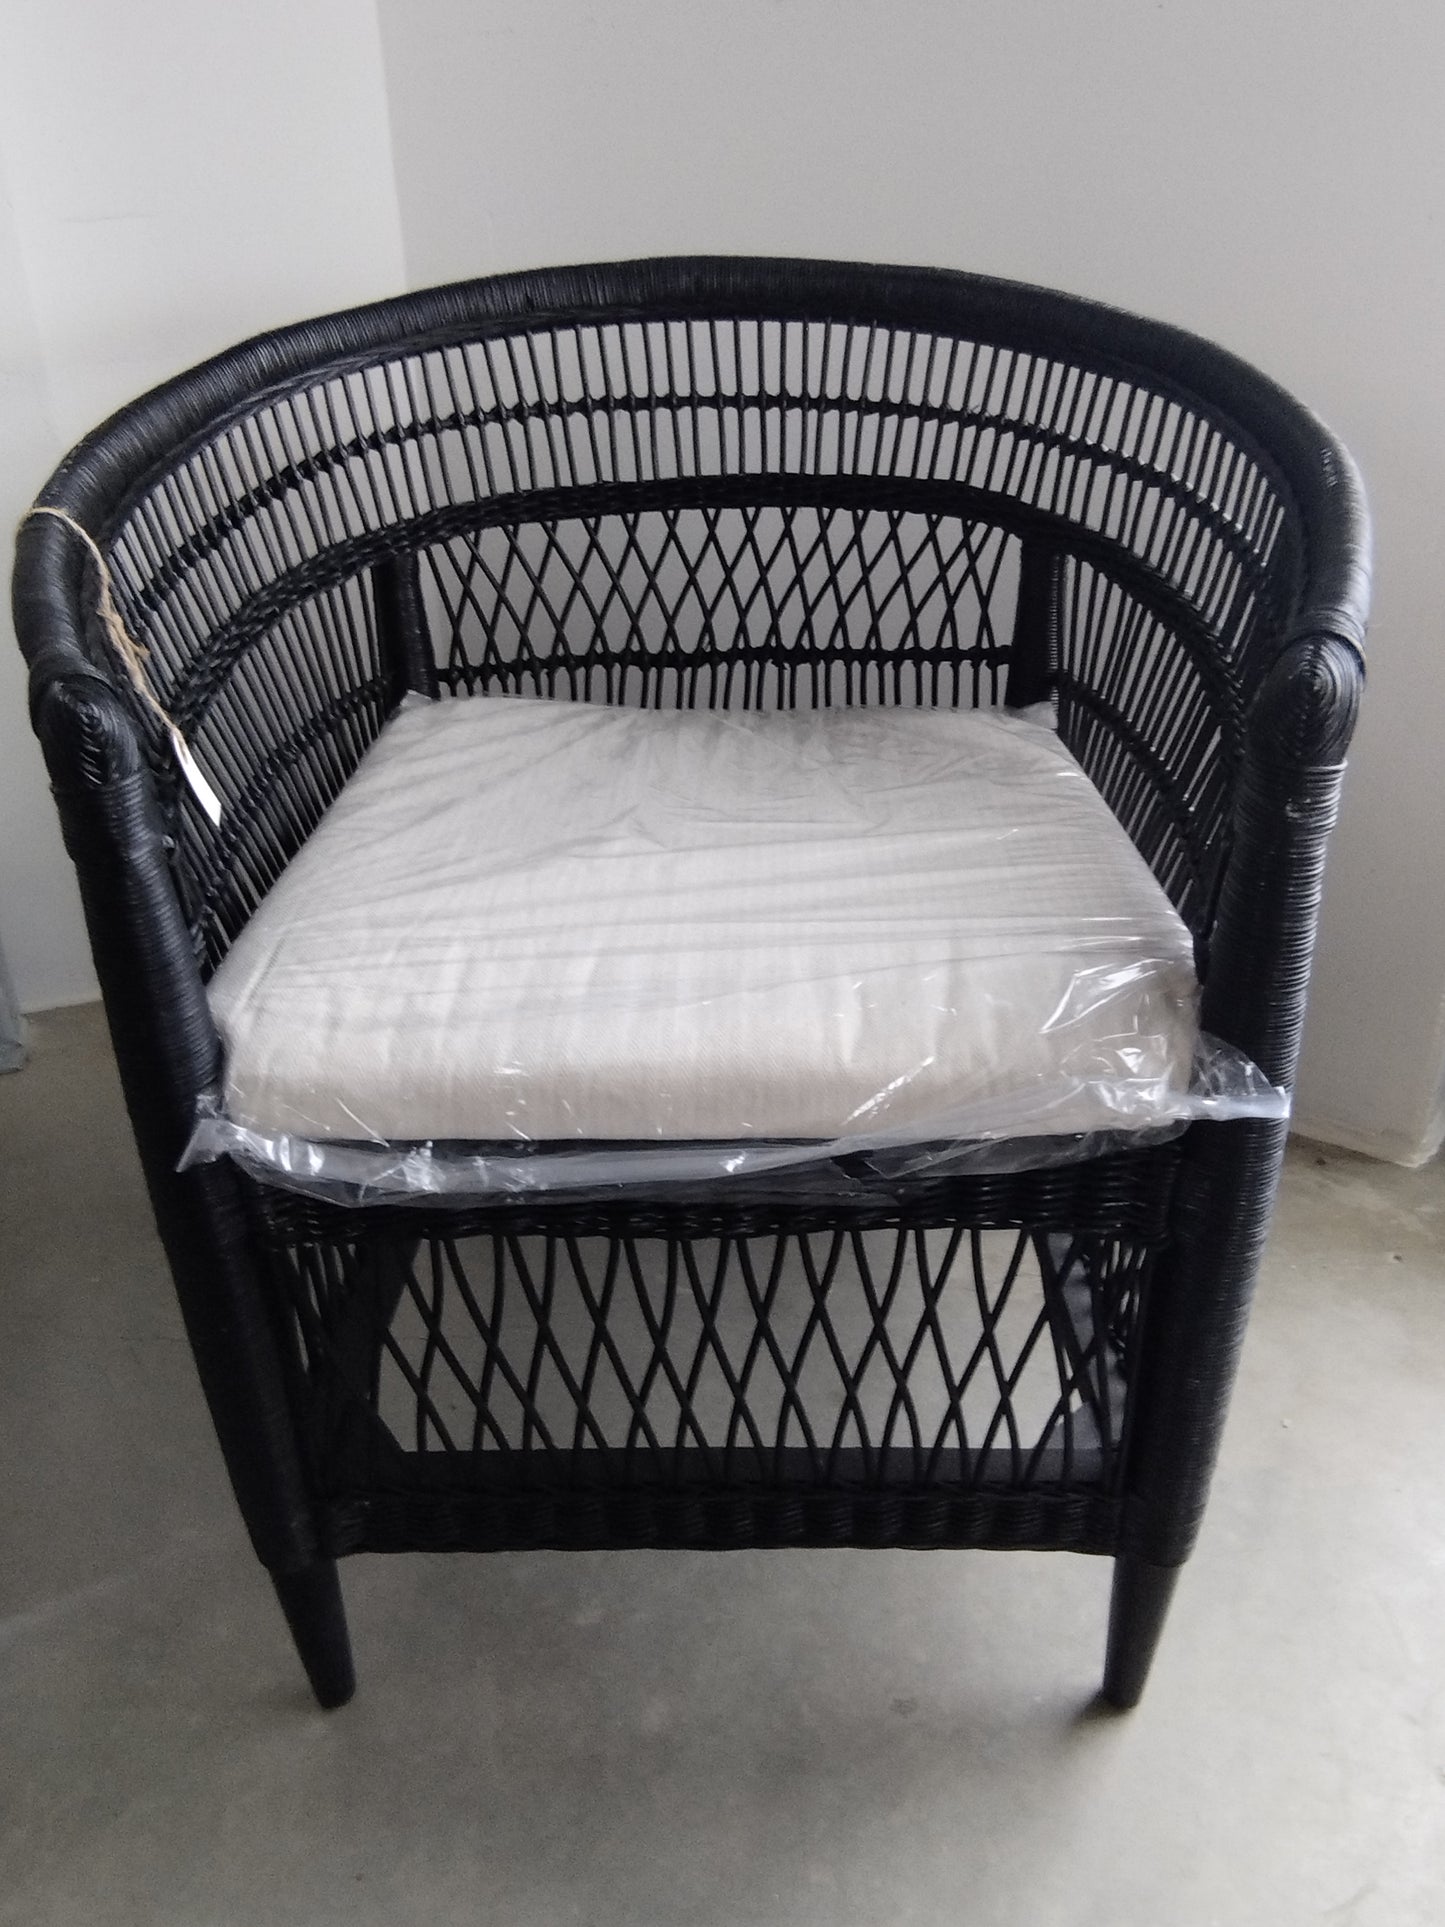 Malawiam Chair/natural rattan with cushion